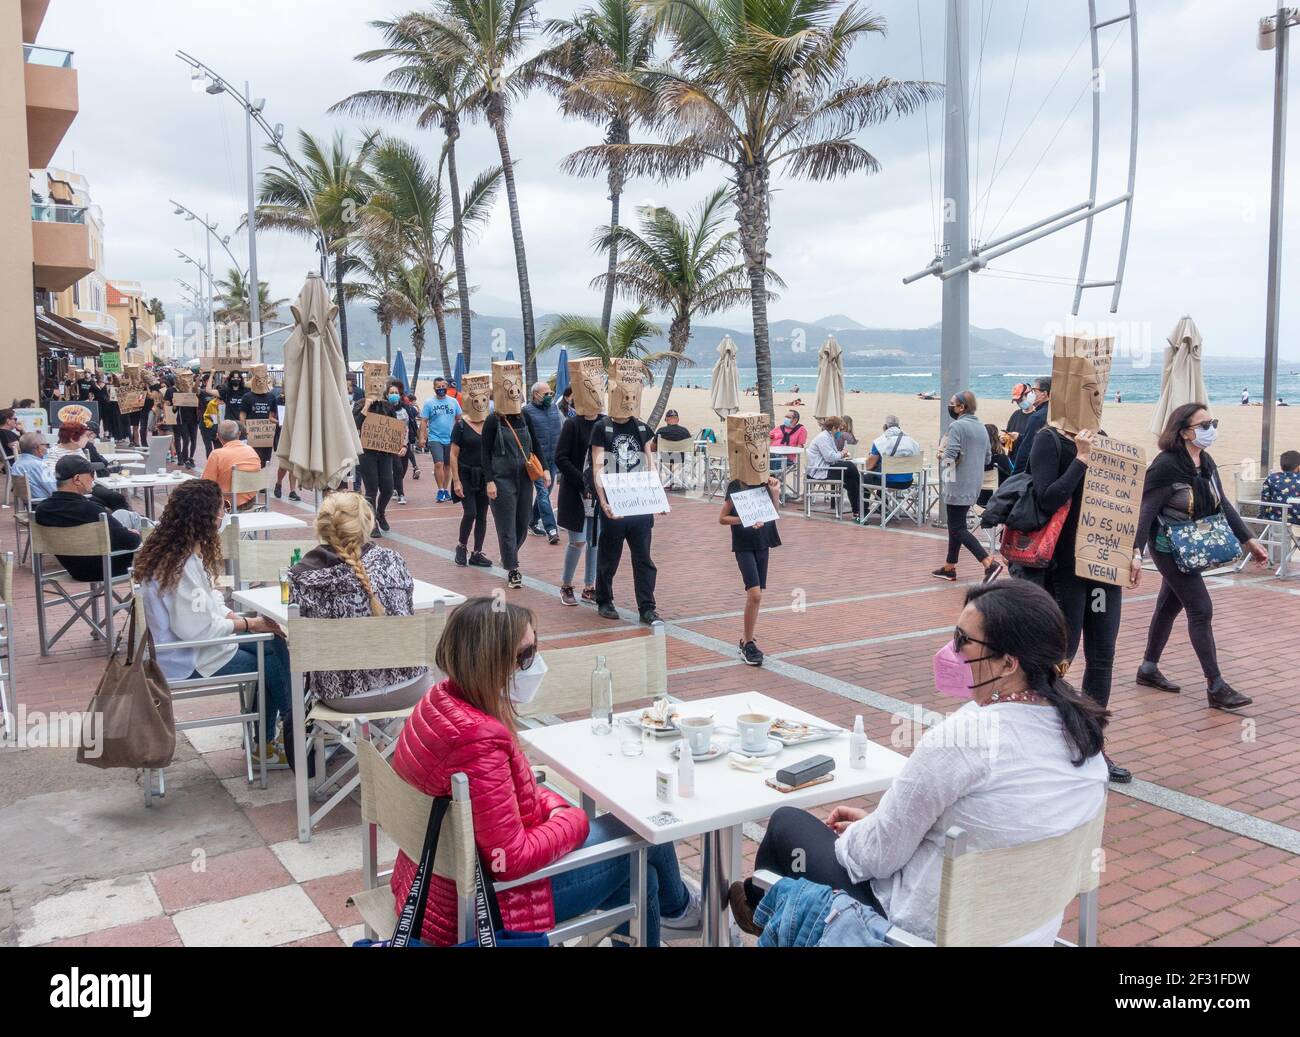 Las Palmas, Gran Canaria, Isole Canarie, Spagna. 14 Marzo 2021. I manifestanti sui diritti degli animali camminano davanti a ristoranti che si affacciano sulla spiaggia della città di Las Palmas, sulla Gran Canaria. Credit: Alan Dawson/Alamy Live News. Foto Stock